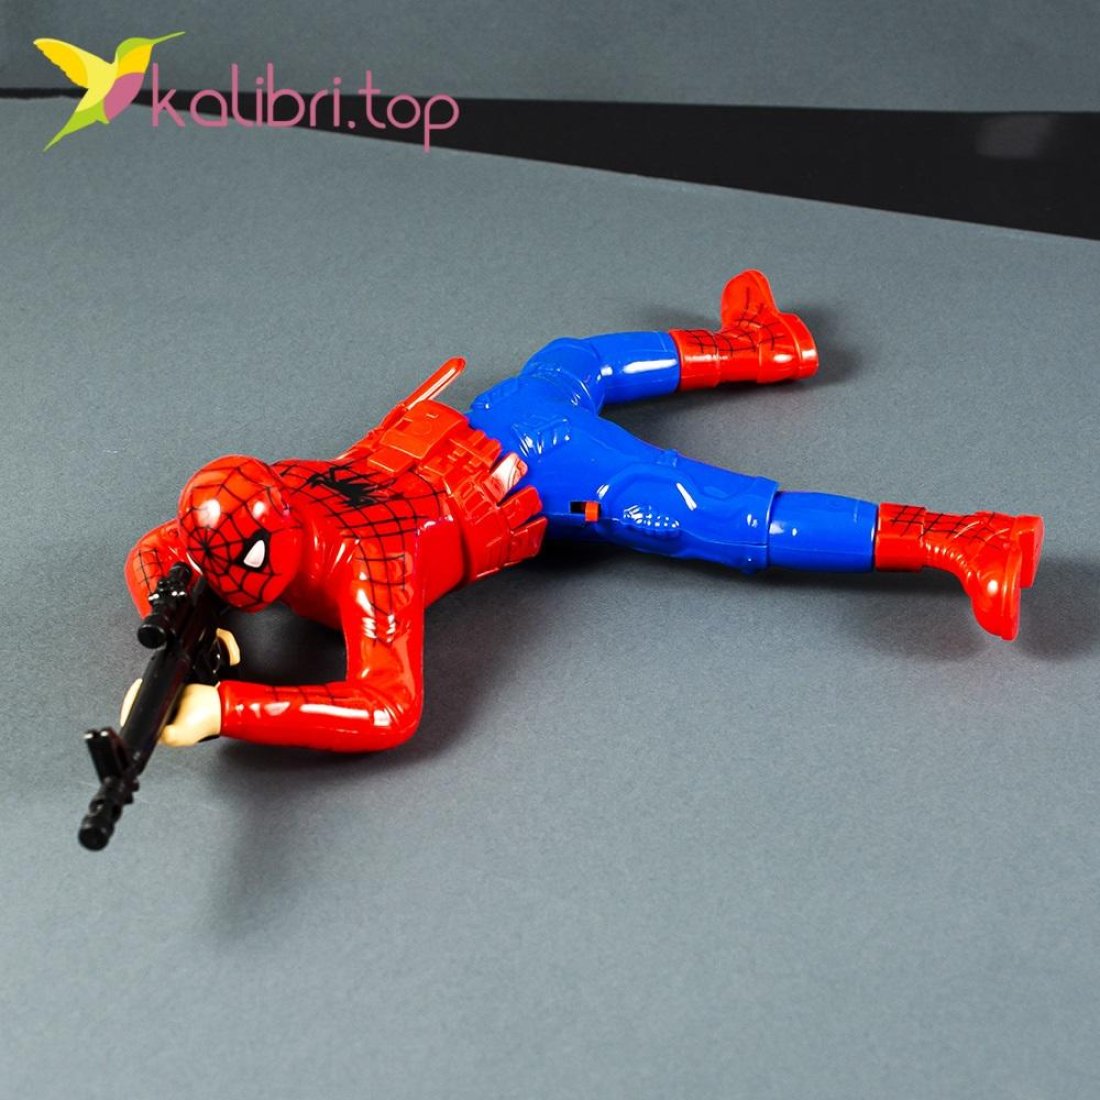 Іграшка повзаюча Людина Павук оптом фото 02